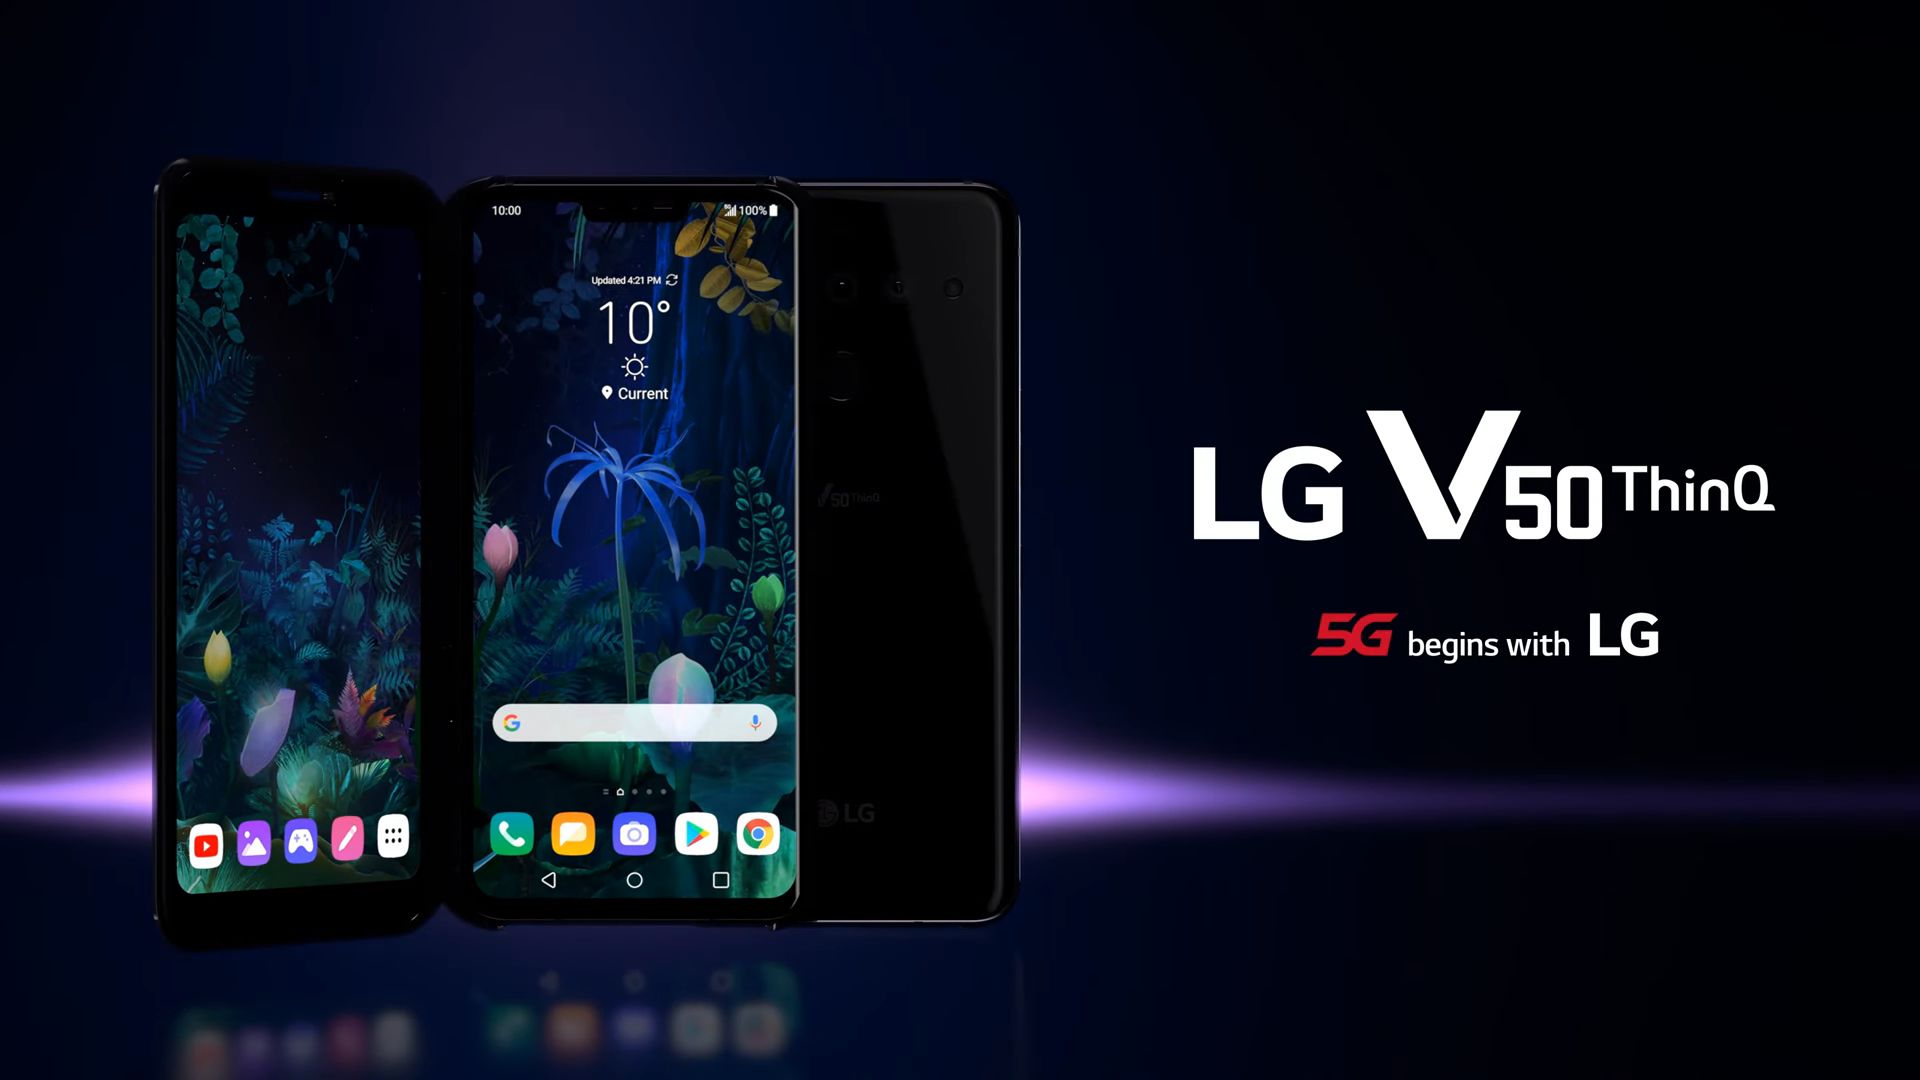 LG V50 ThinQ 5G è stato presentato ufficialmente: lo smartphone di punta di LG con un secondo display aggiuntivo